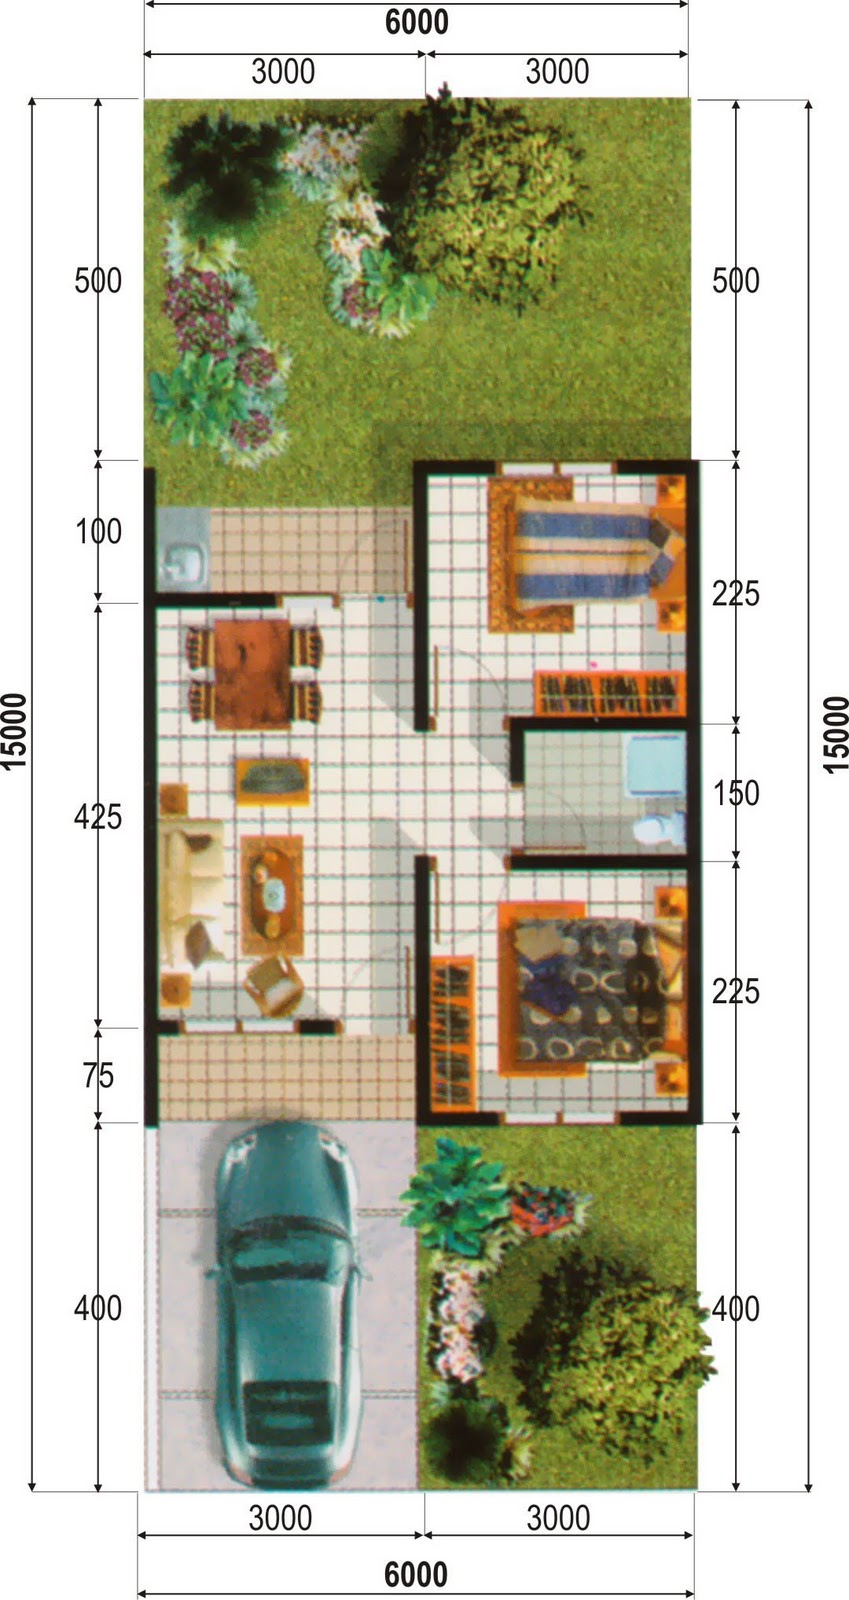 Desain Rumah Minimalis Type 80 2016 Prathama Raghavan